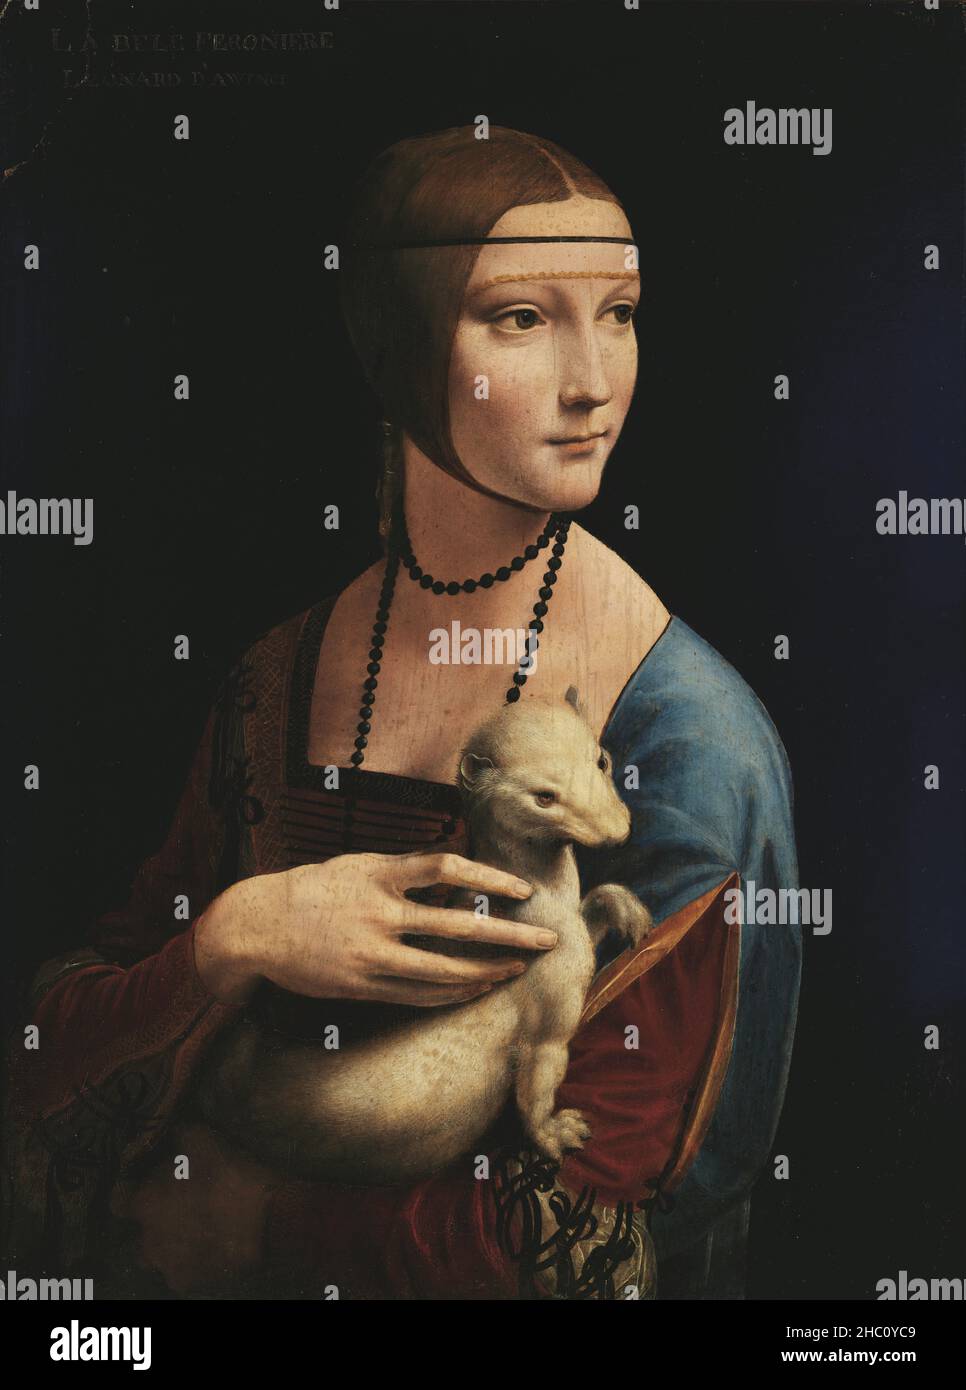 Lady with an Ermine by Leonardo Da Vinci Stock Photo